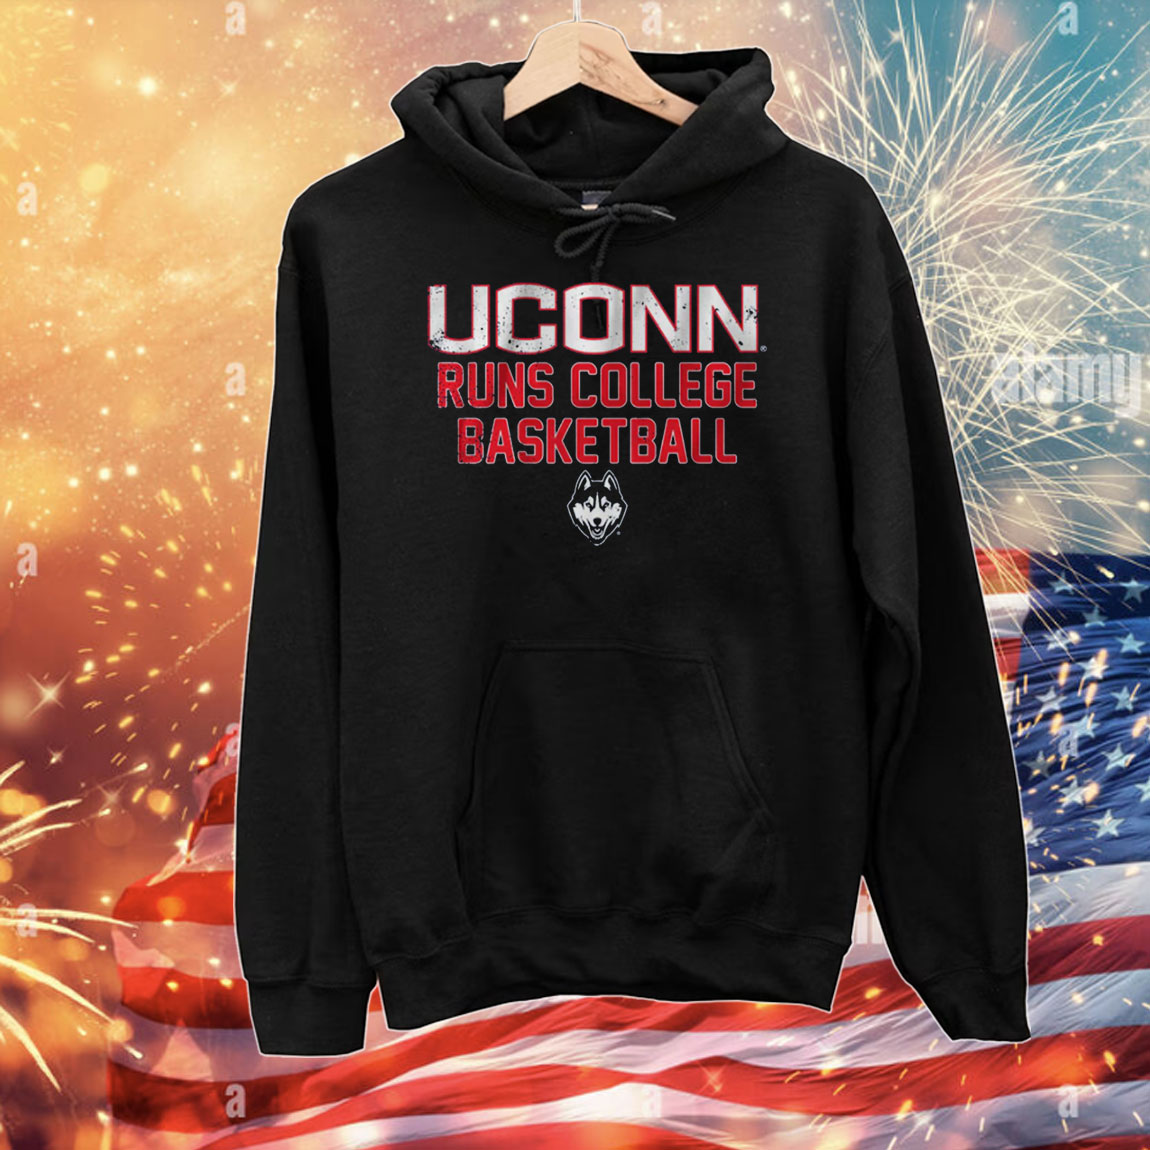 UConn Runs College Basketball T-Shirt